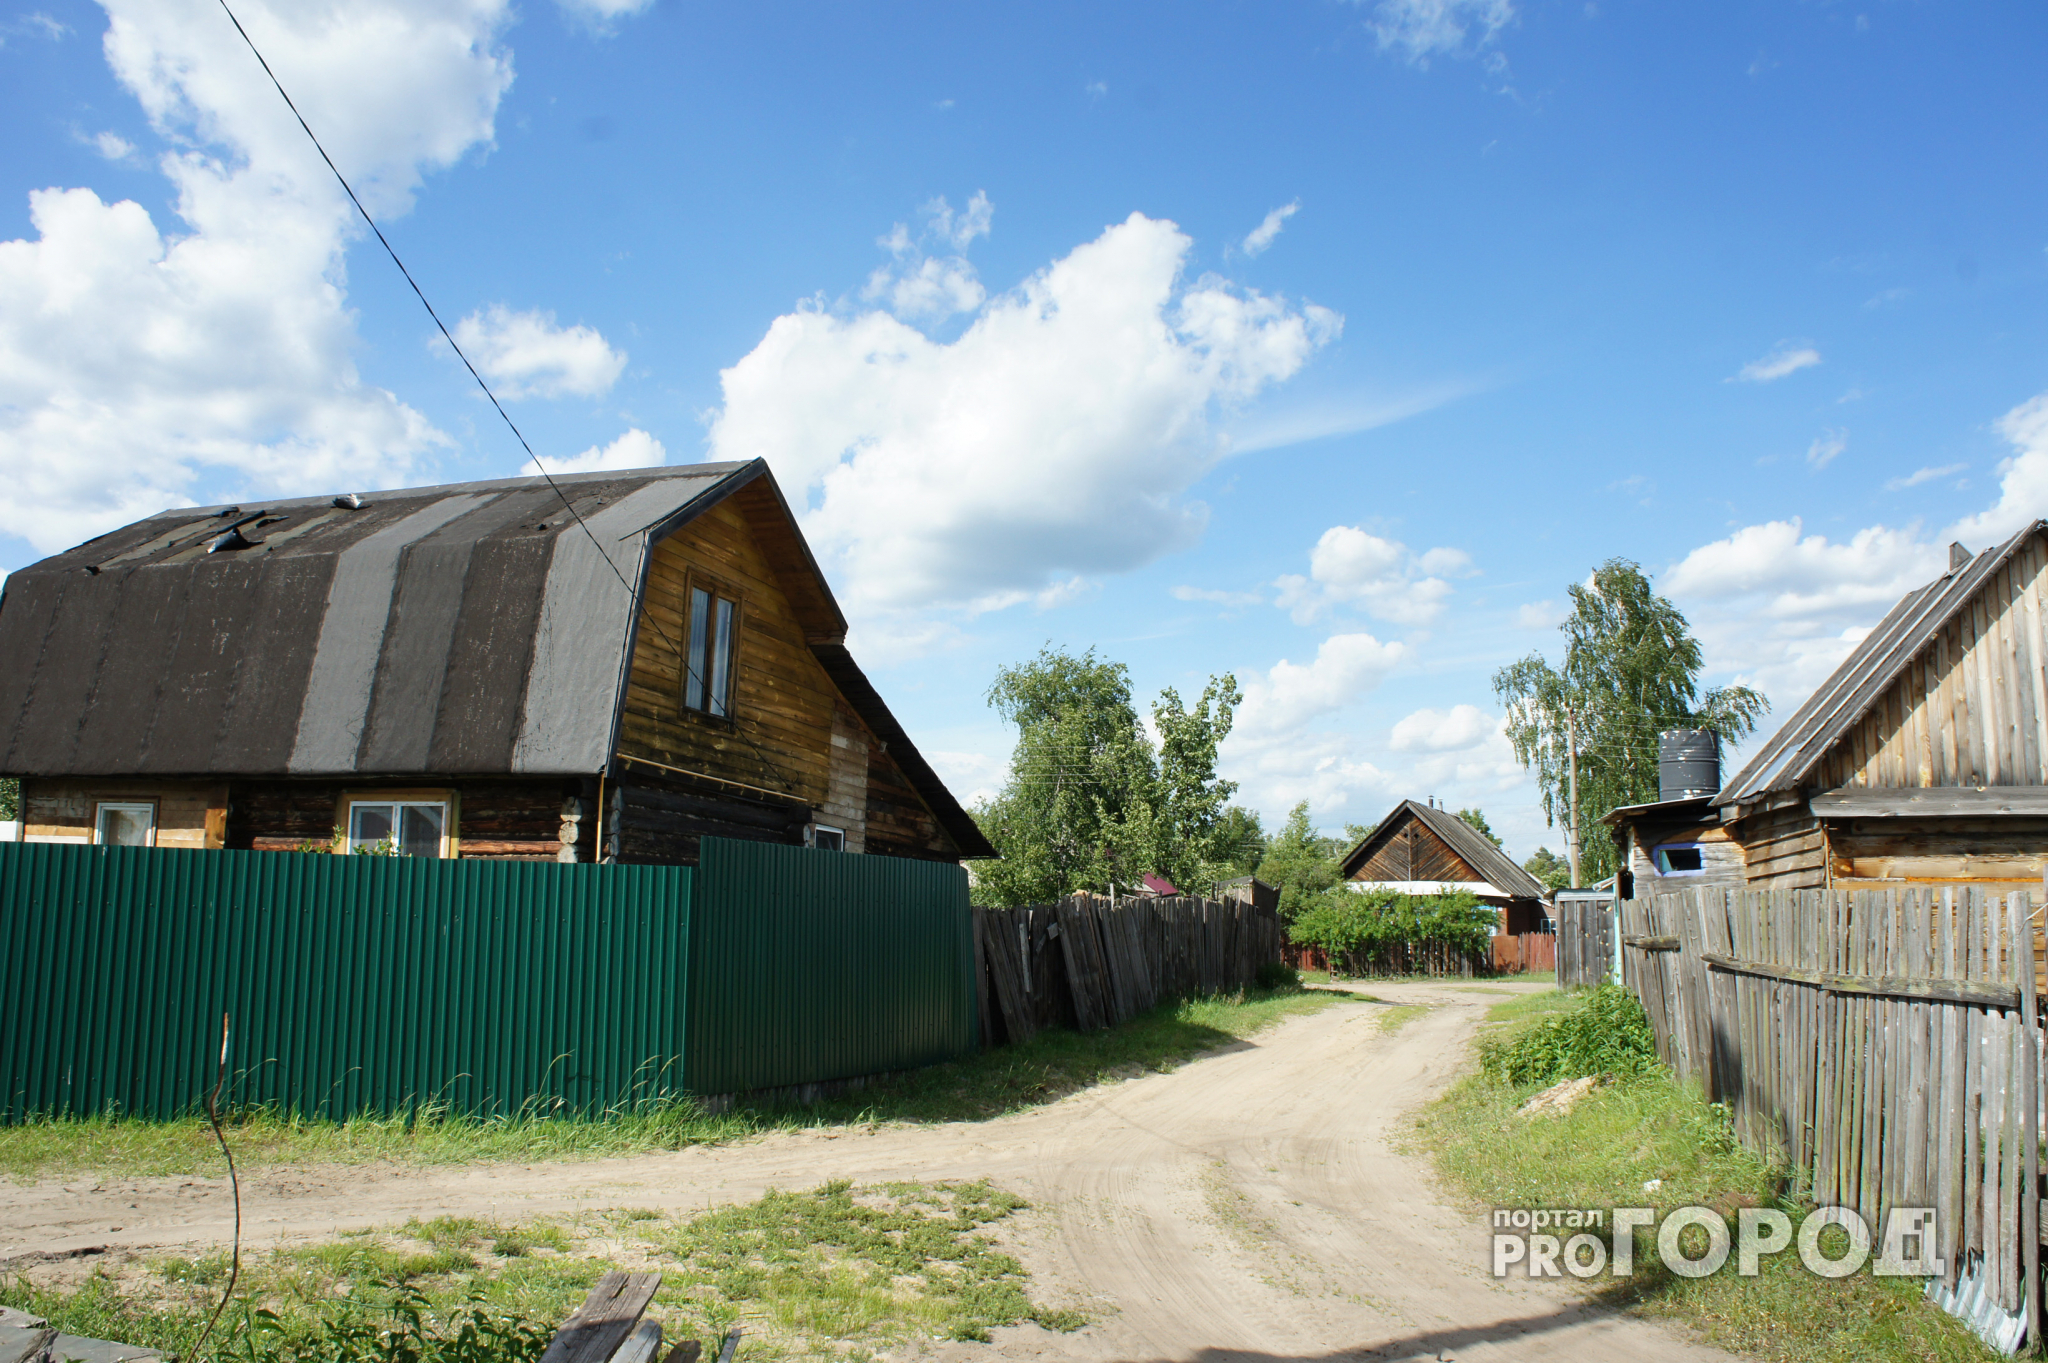 В Кировской области в подполье одного из домов нашли тело женщины